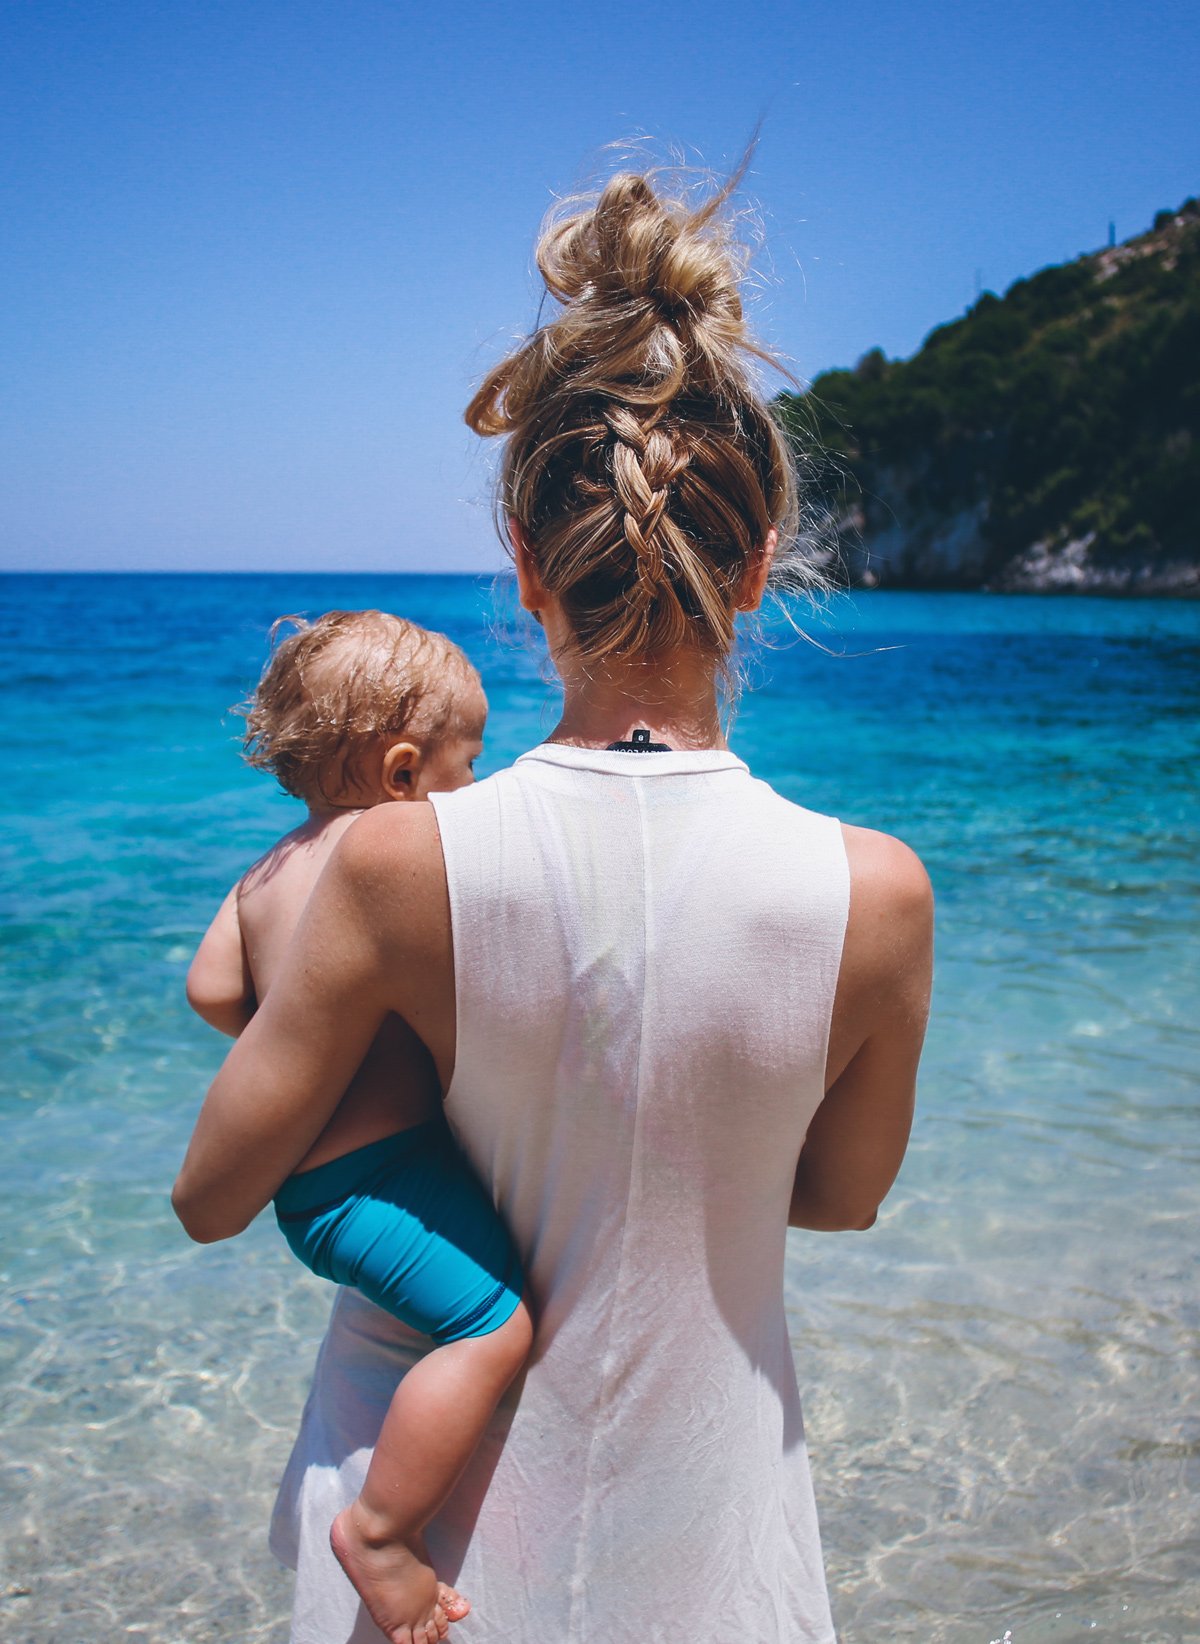 Фото блондинки с ребенком на руках со спины